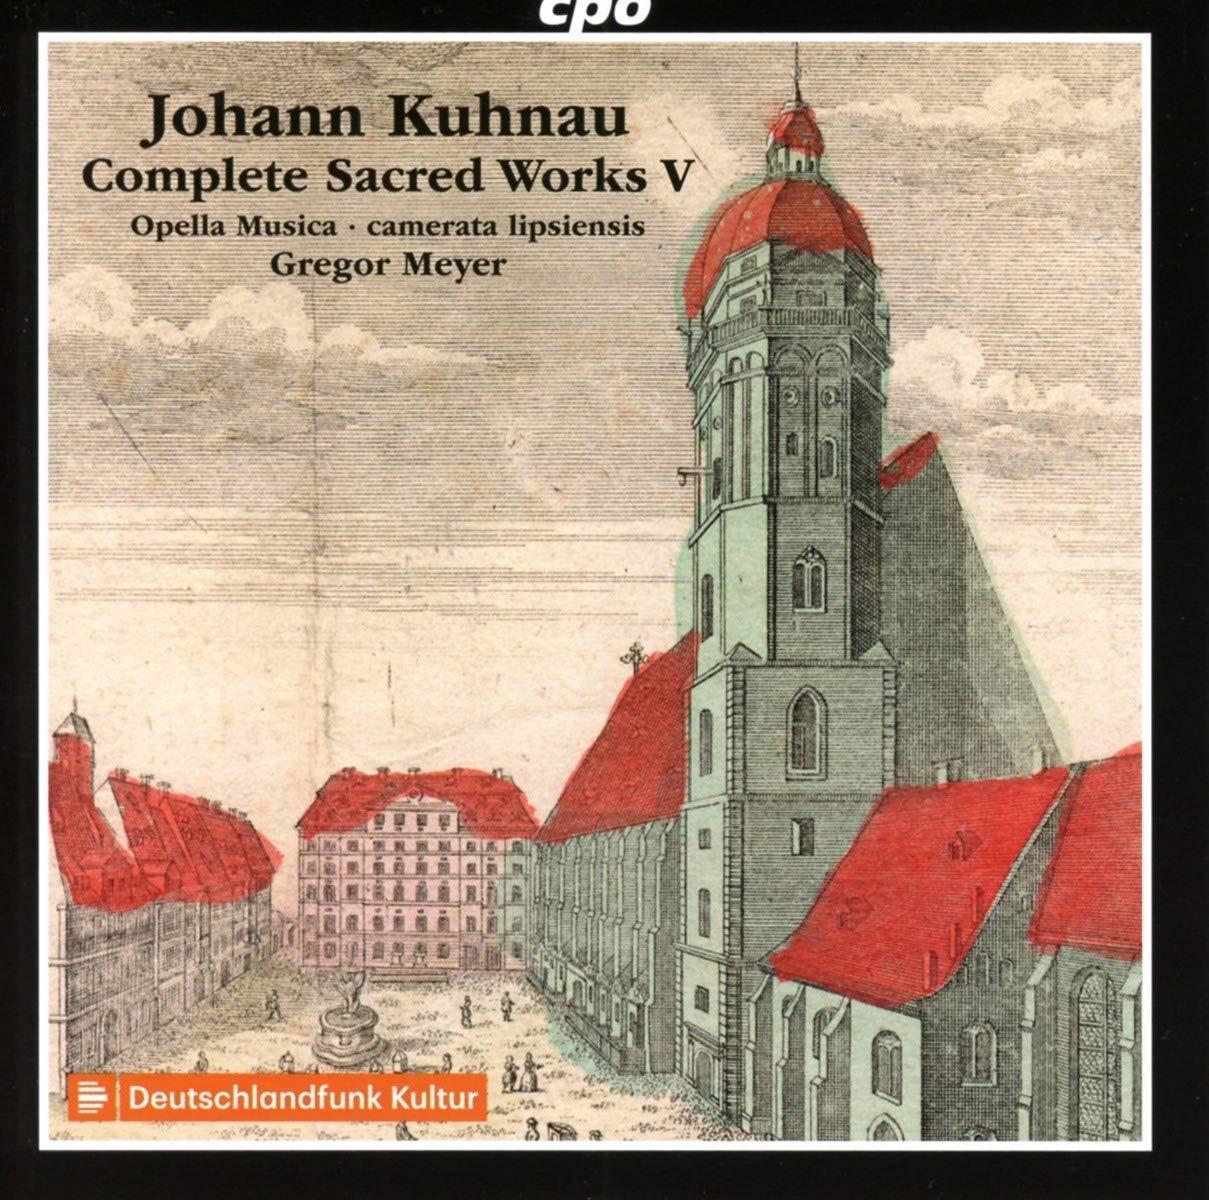 Cover of Kuhnau CD